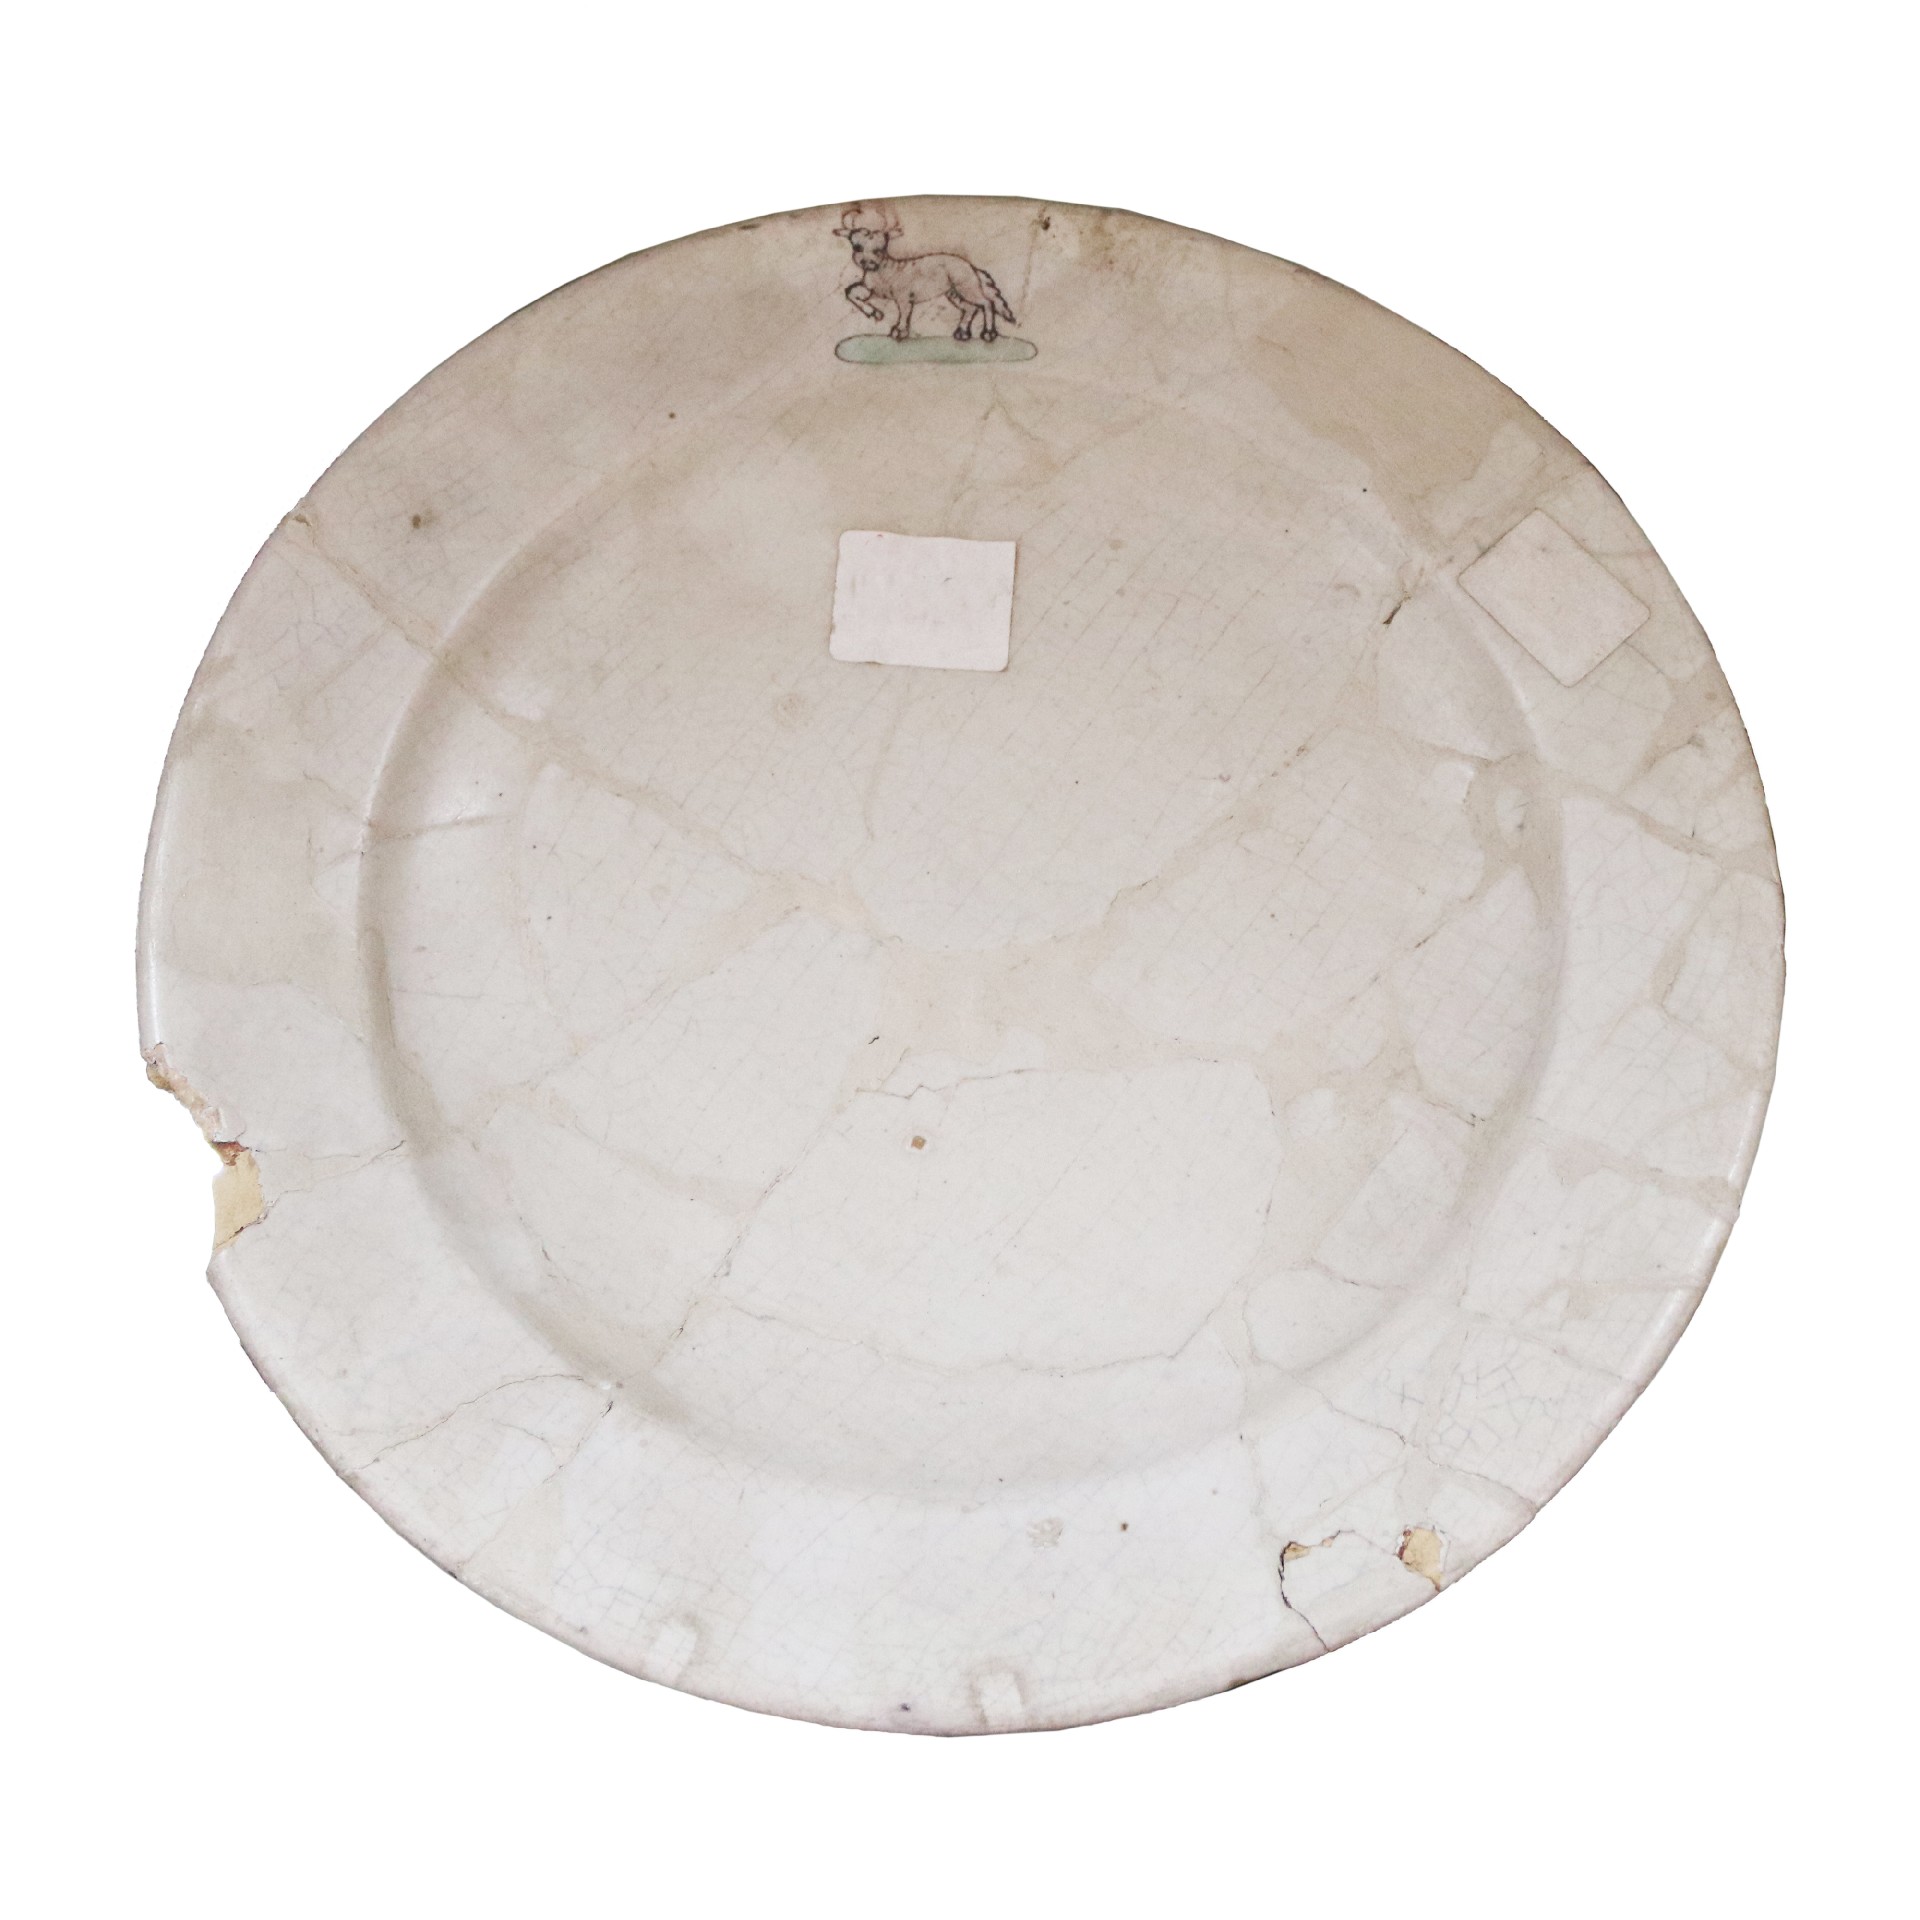 Antico piatto in maiolica - Ceramiche - Oggettistica - Prodotti - Antichità Fiorillo